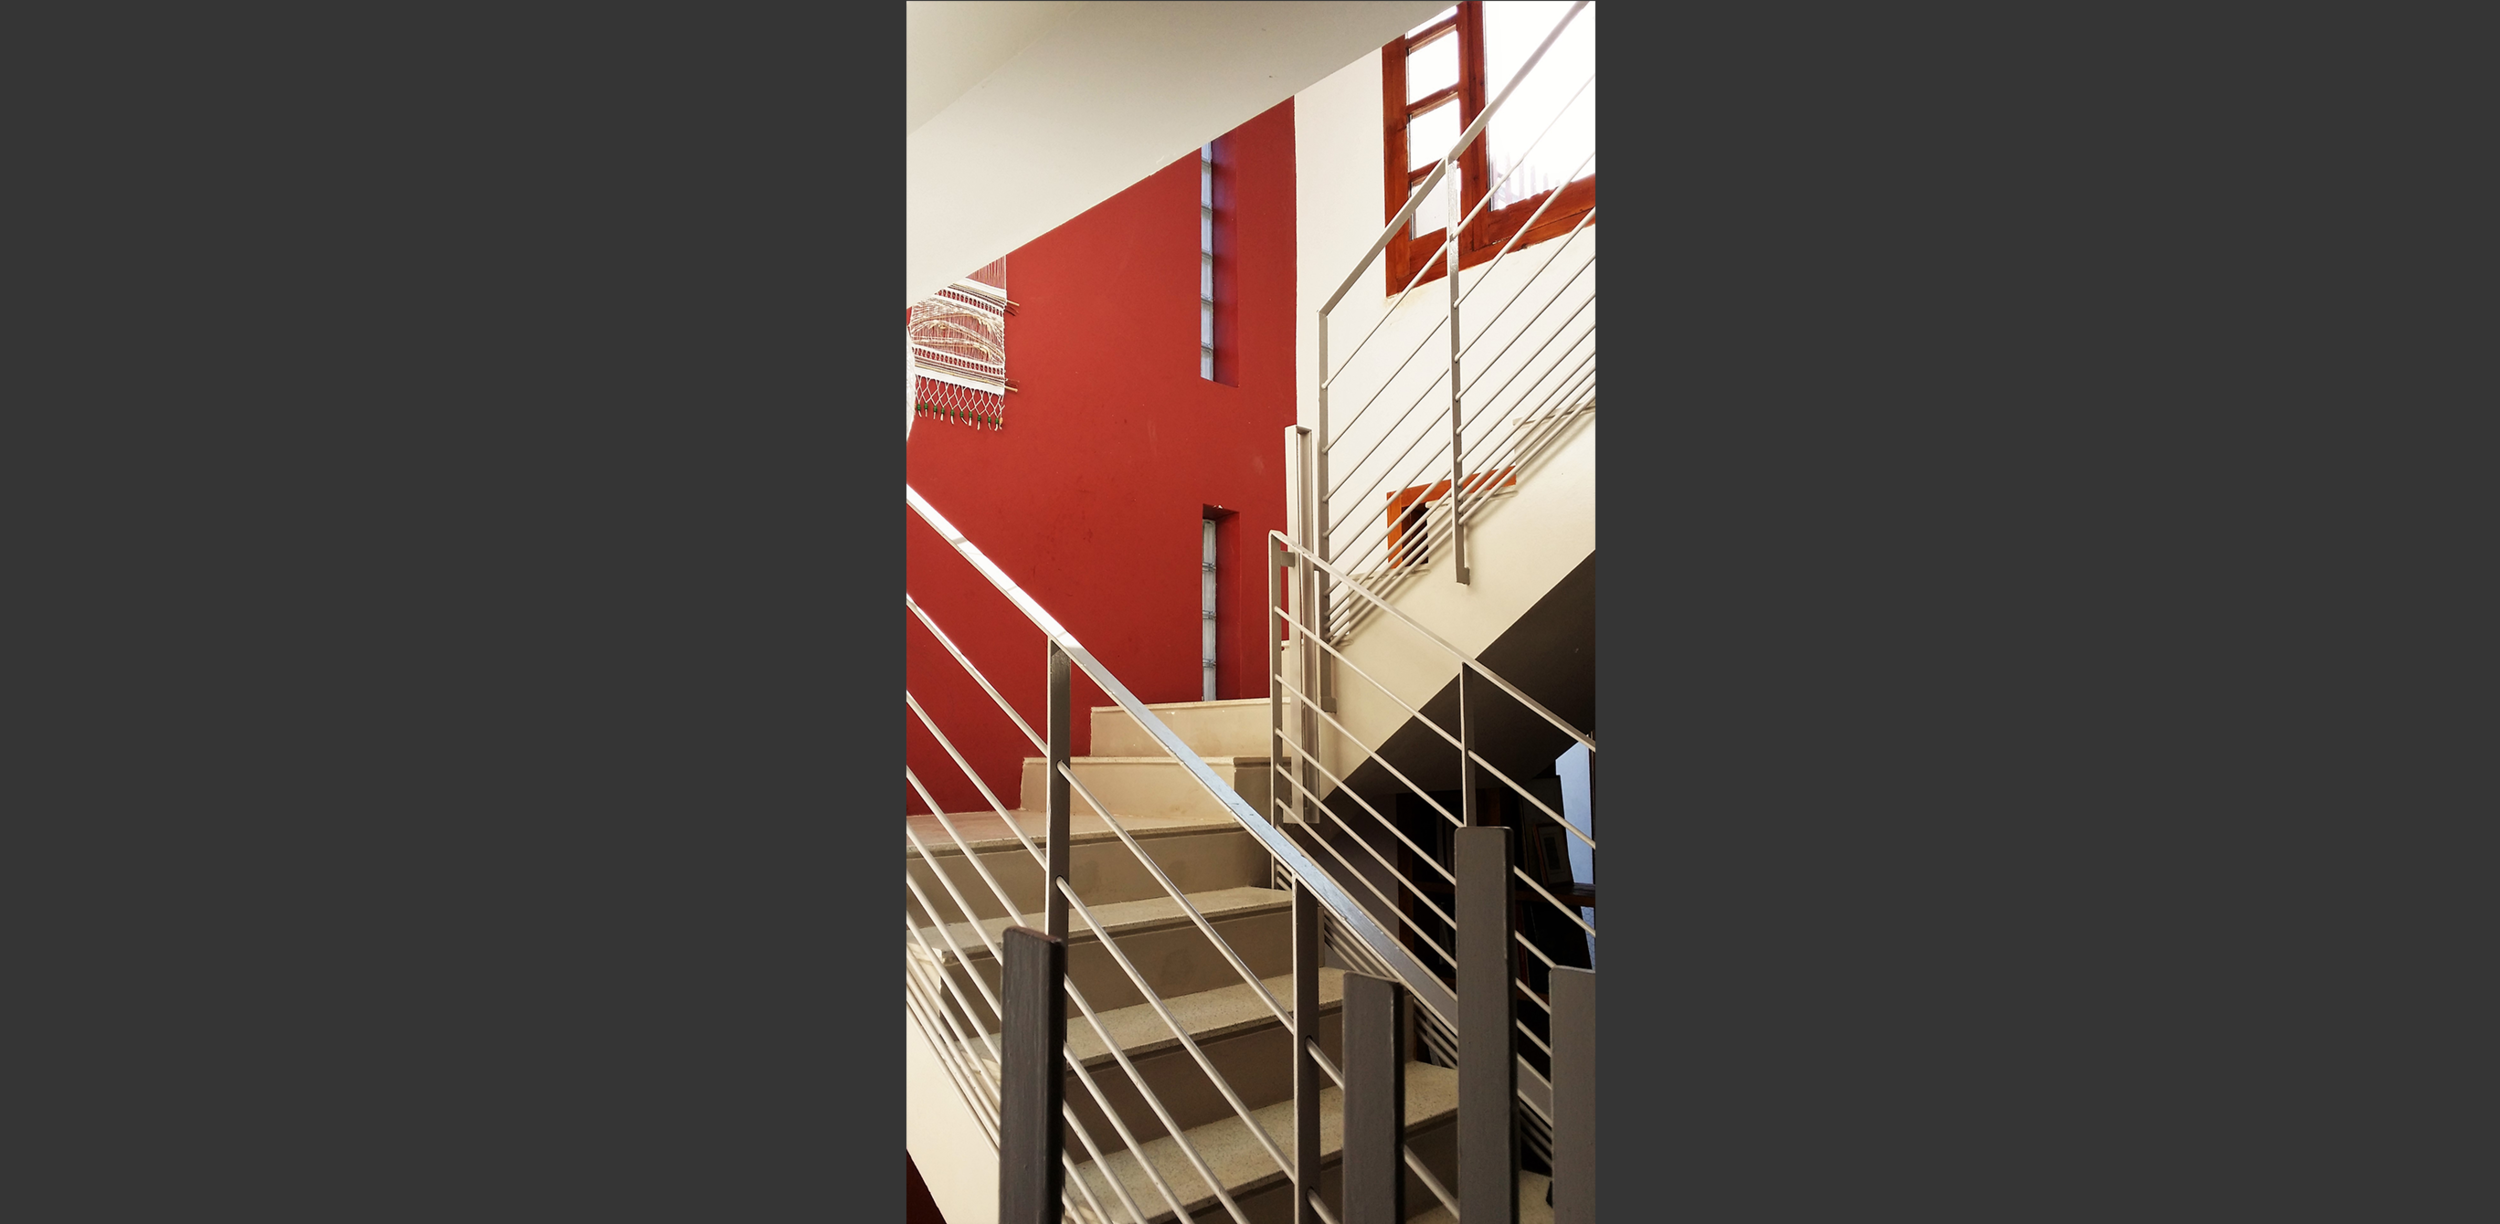 Escalier Maison à quatre patios Kolea, Atelier Messaoudi architecture aménagement et design. Bureau d'étude Algérie.